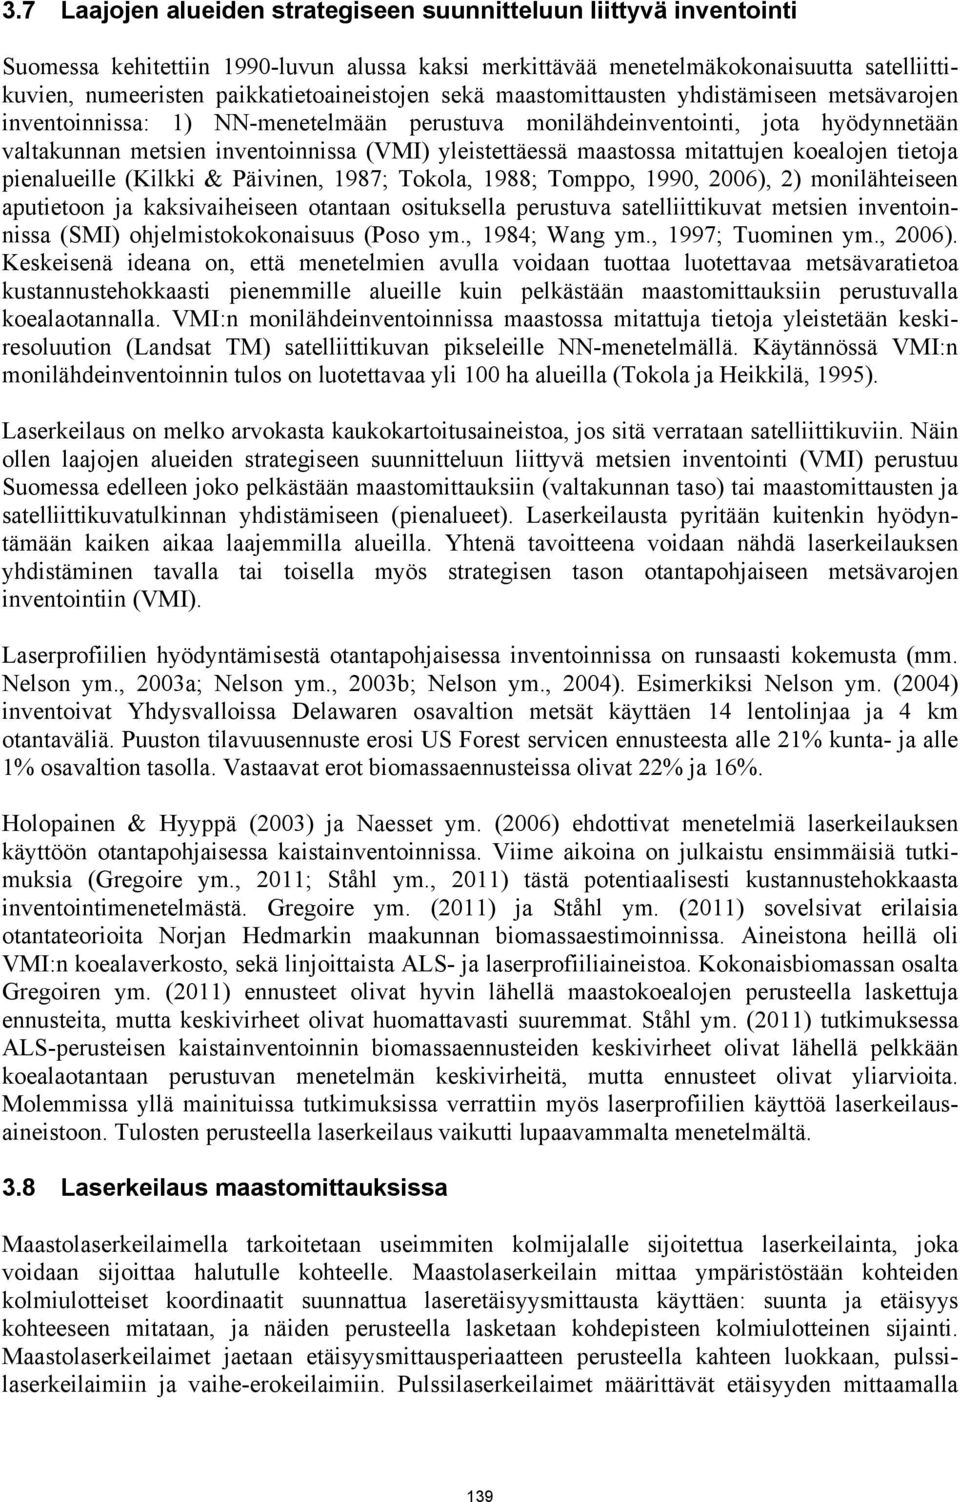 yleistettäessä maastossa mitattujen koealojen tietoja pienalueille (Kilkki & Päivinen, 1987; Tokola, 1988; Tomppo, 1990, 2006), 2) monilähteiseen aputietoon ja kaksivaiheiseen otantaan osituksella